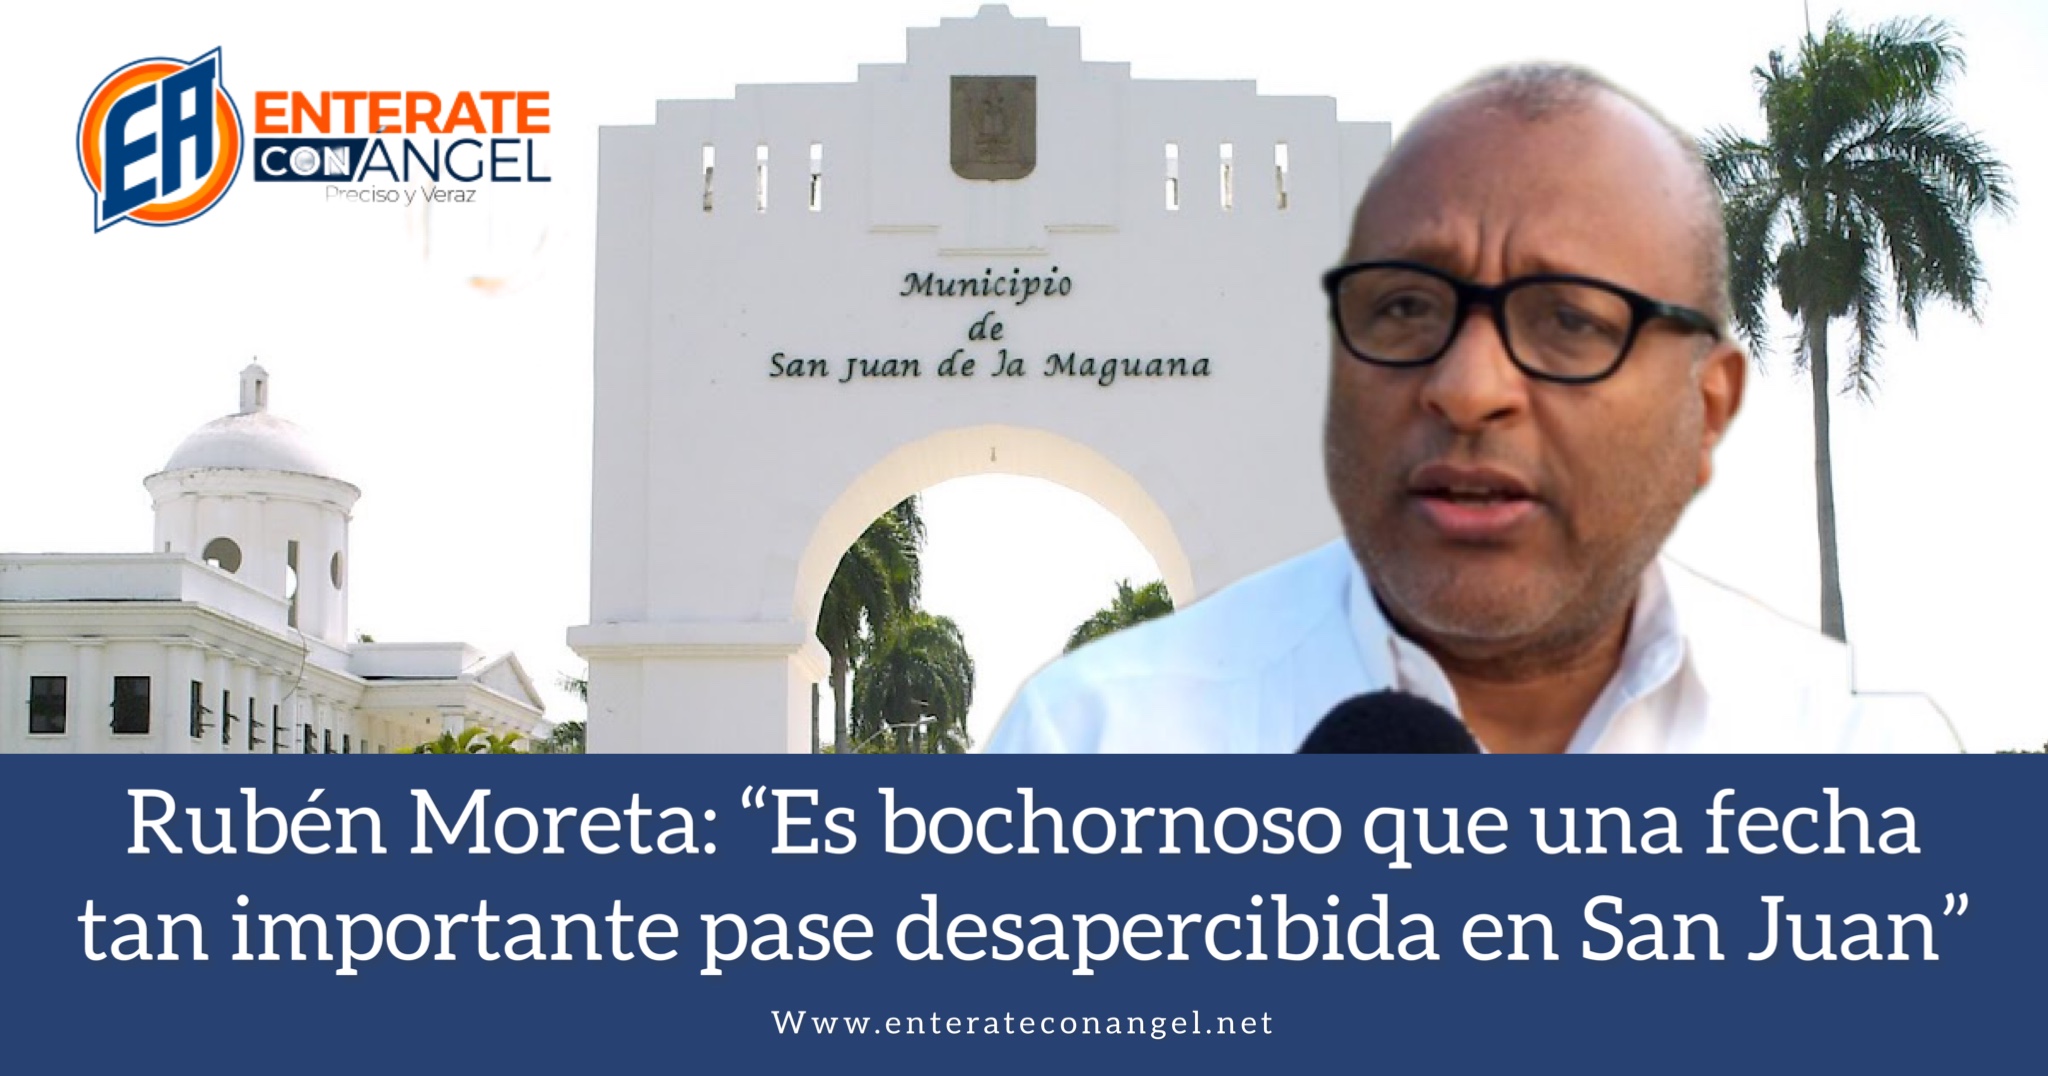 Rubén Moreta: “Es bochornoso que una fecha tan importante pase desapercibida en San Juan”